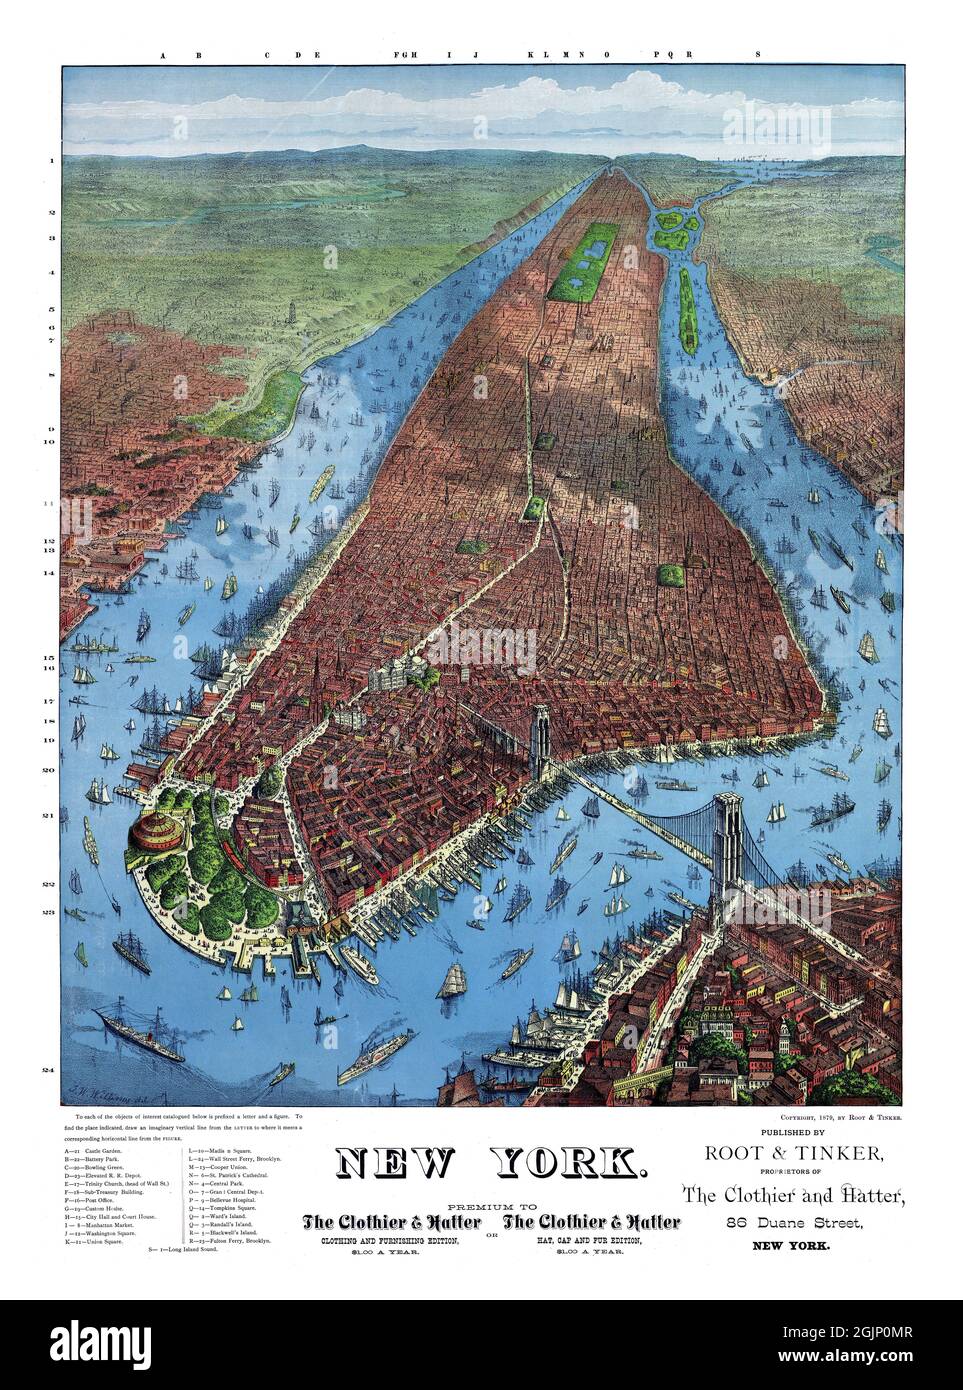 La carte de perspective de New York n'est pas à l'échelle de J. W. Williams.Affiche ancienne restaurée publiée par Root & Tinker, New York en 1879. Banque D'Images